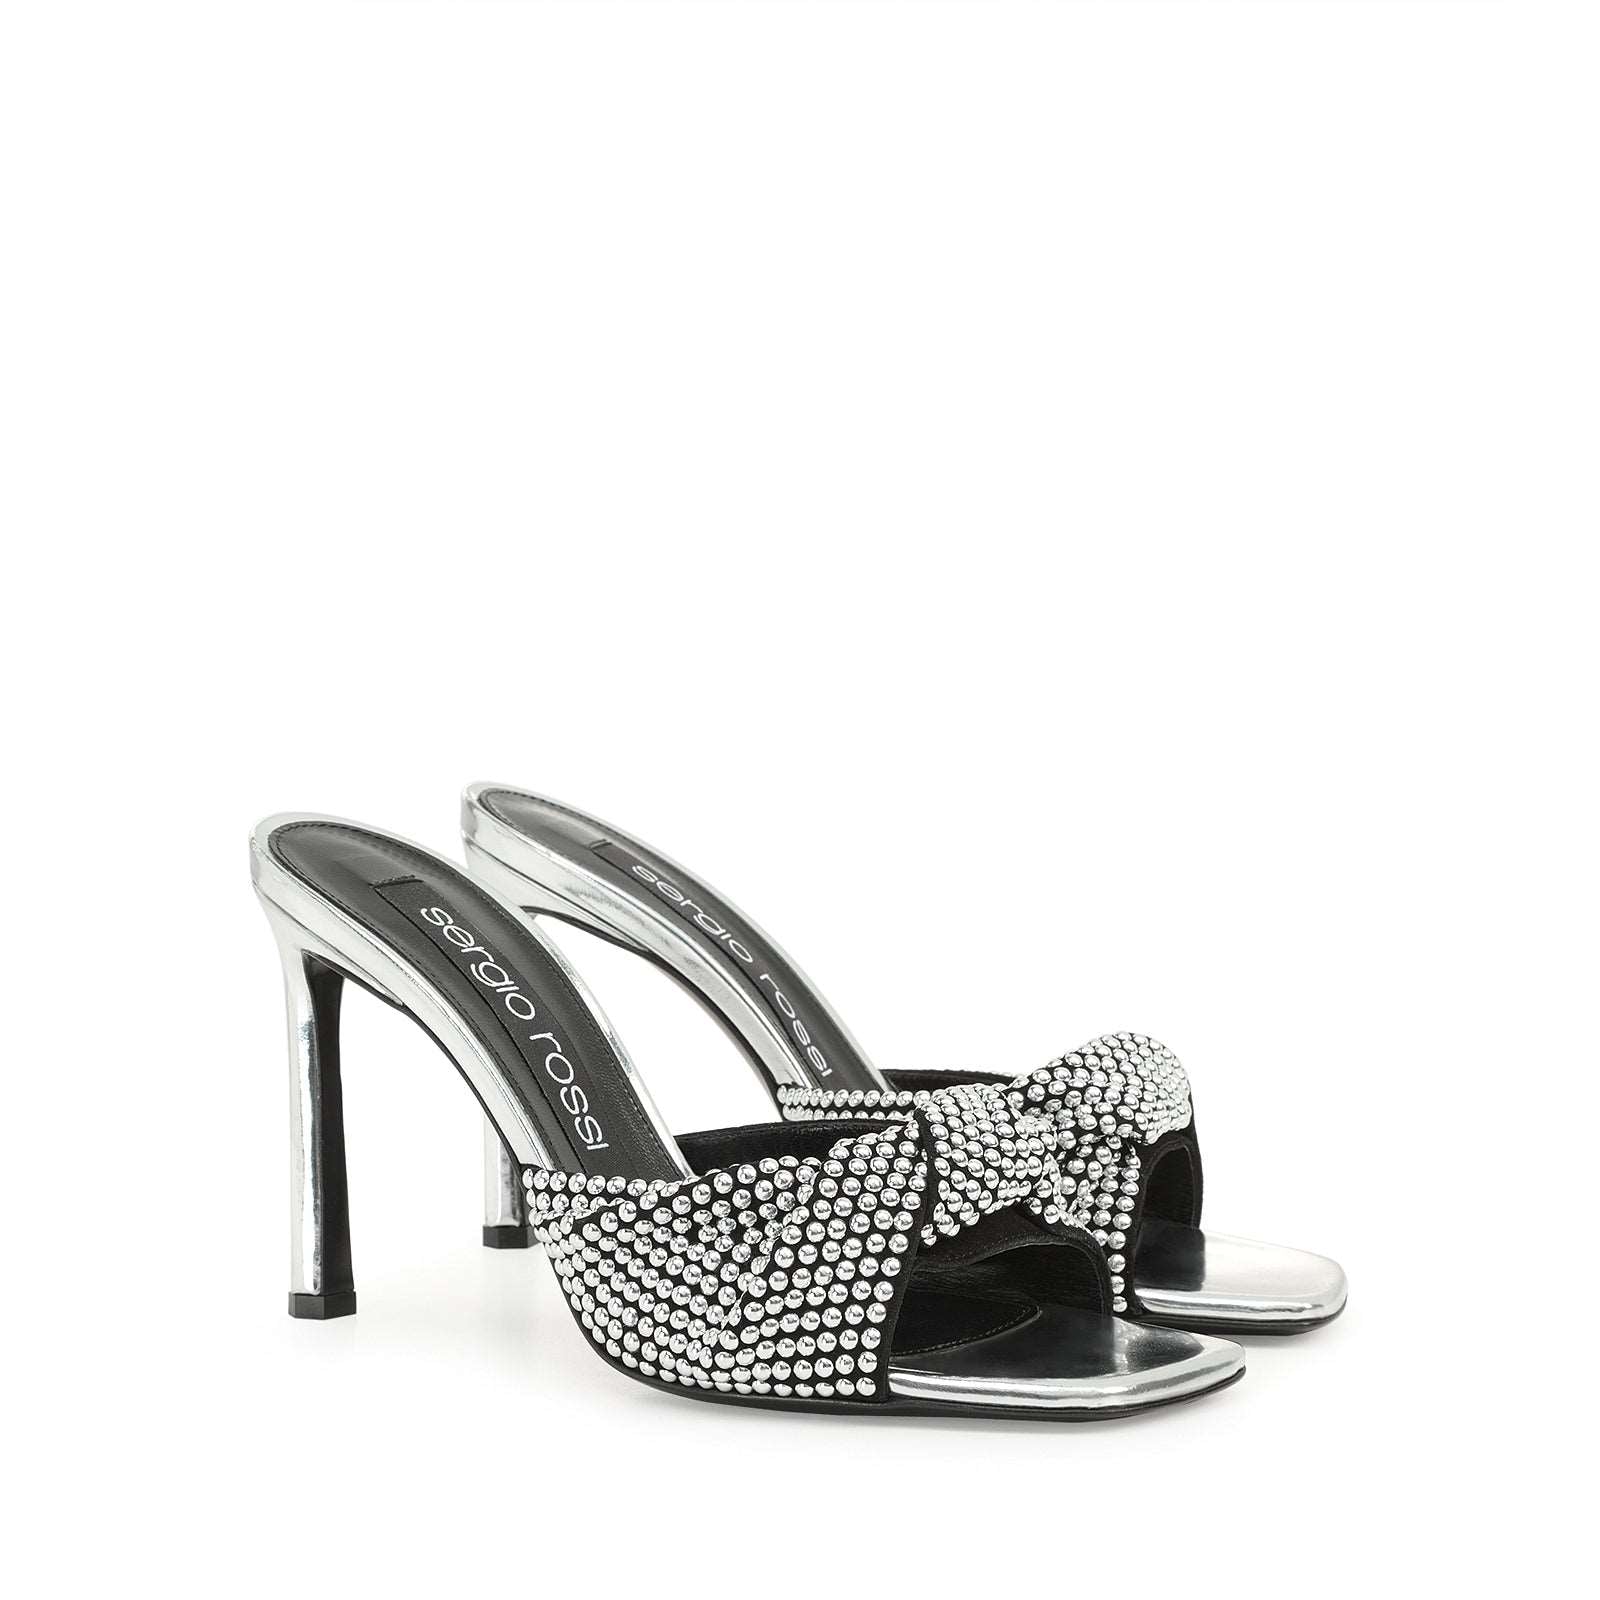 Evangelie Sandal Heel|B04400Mfi977 Silver